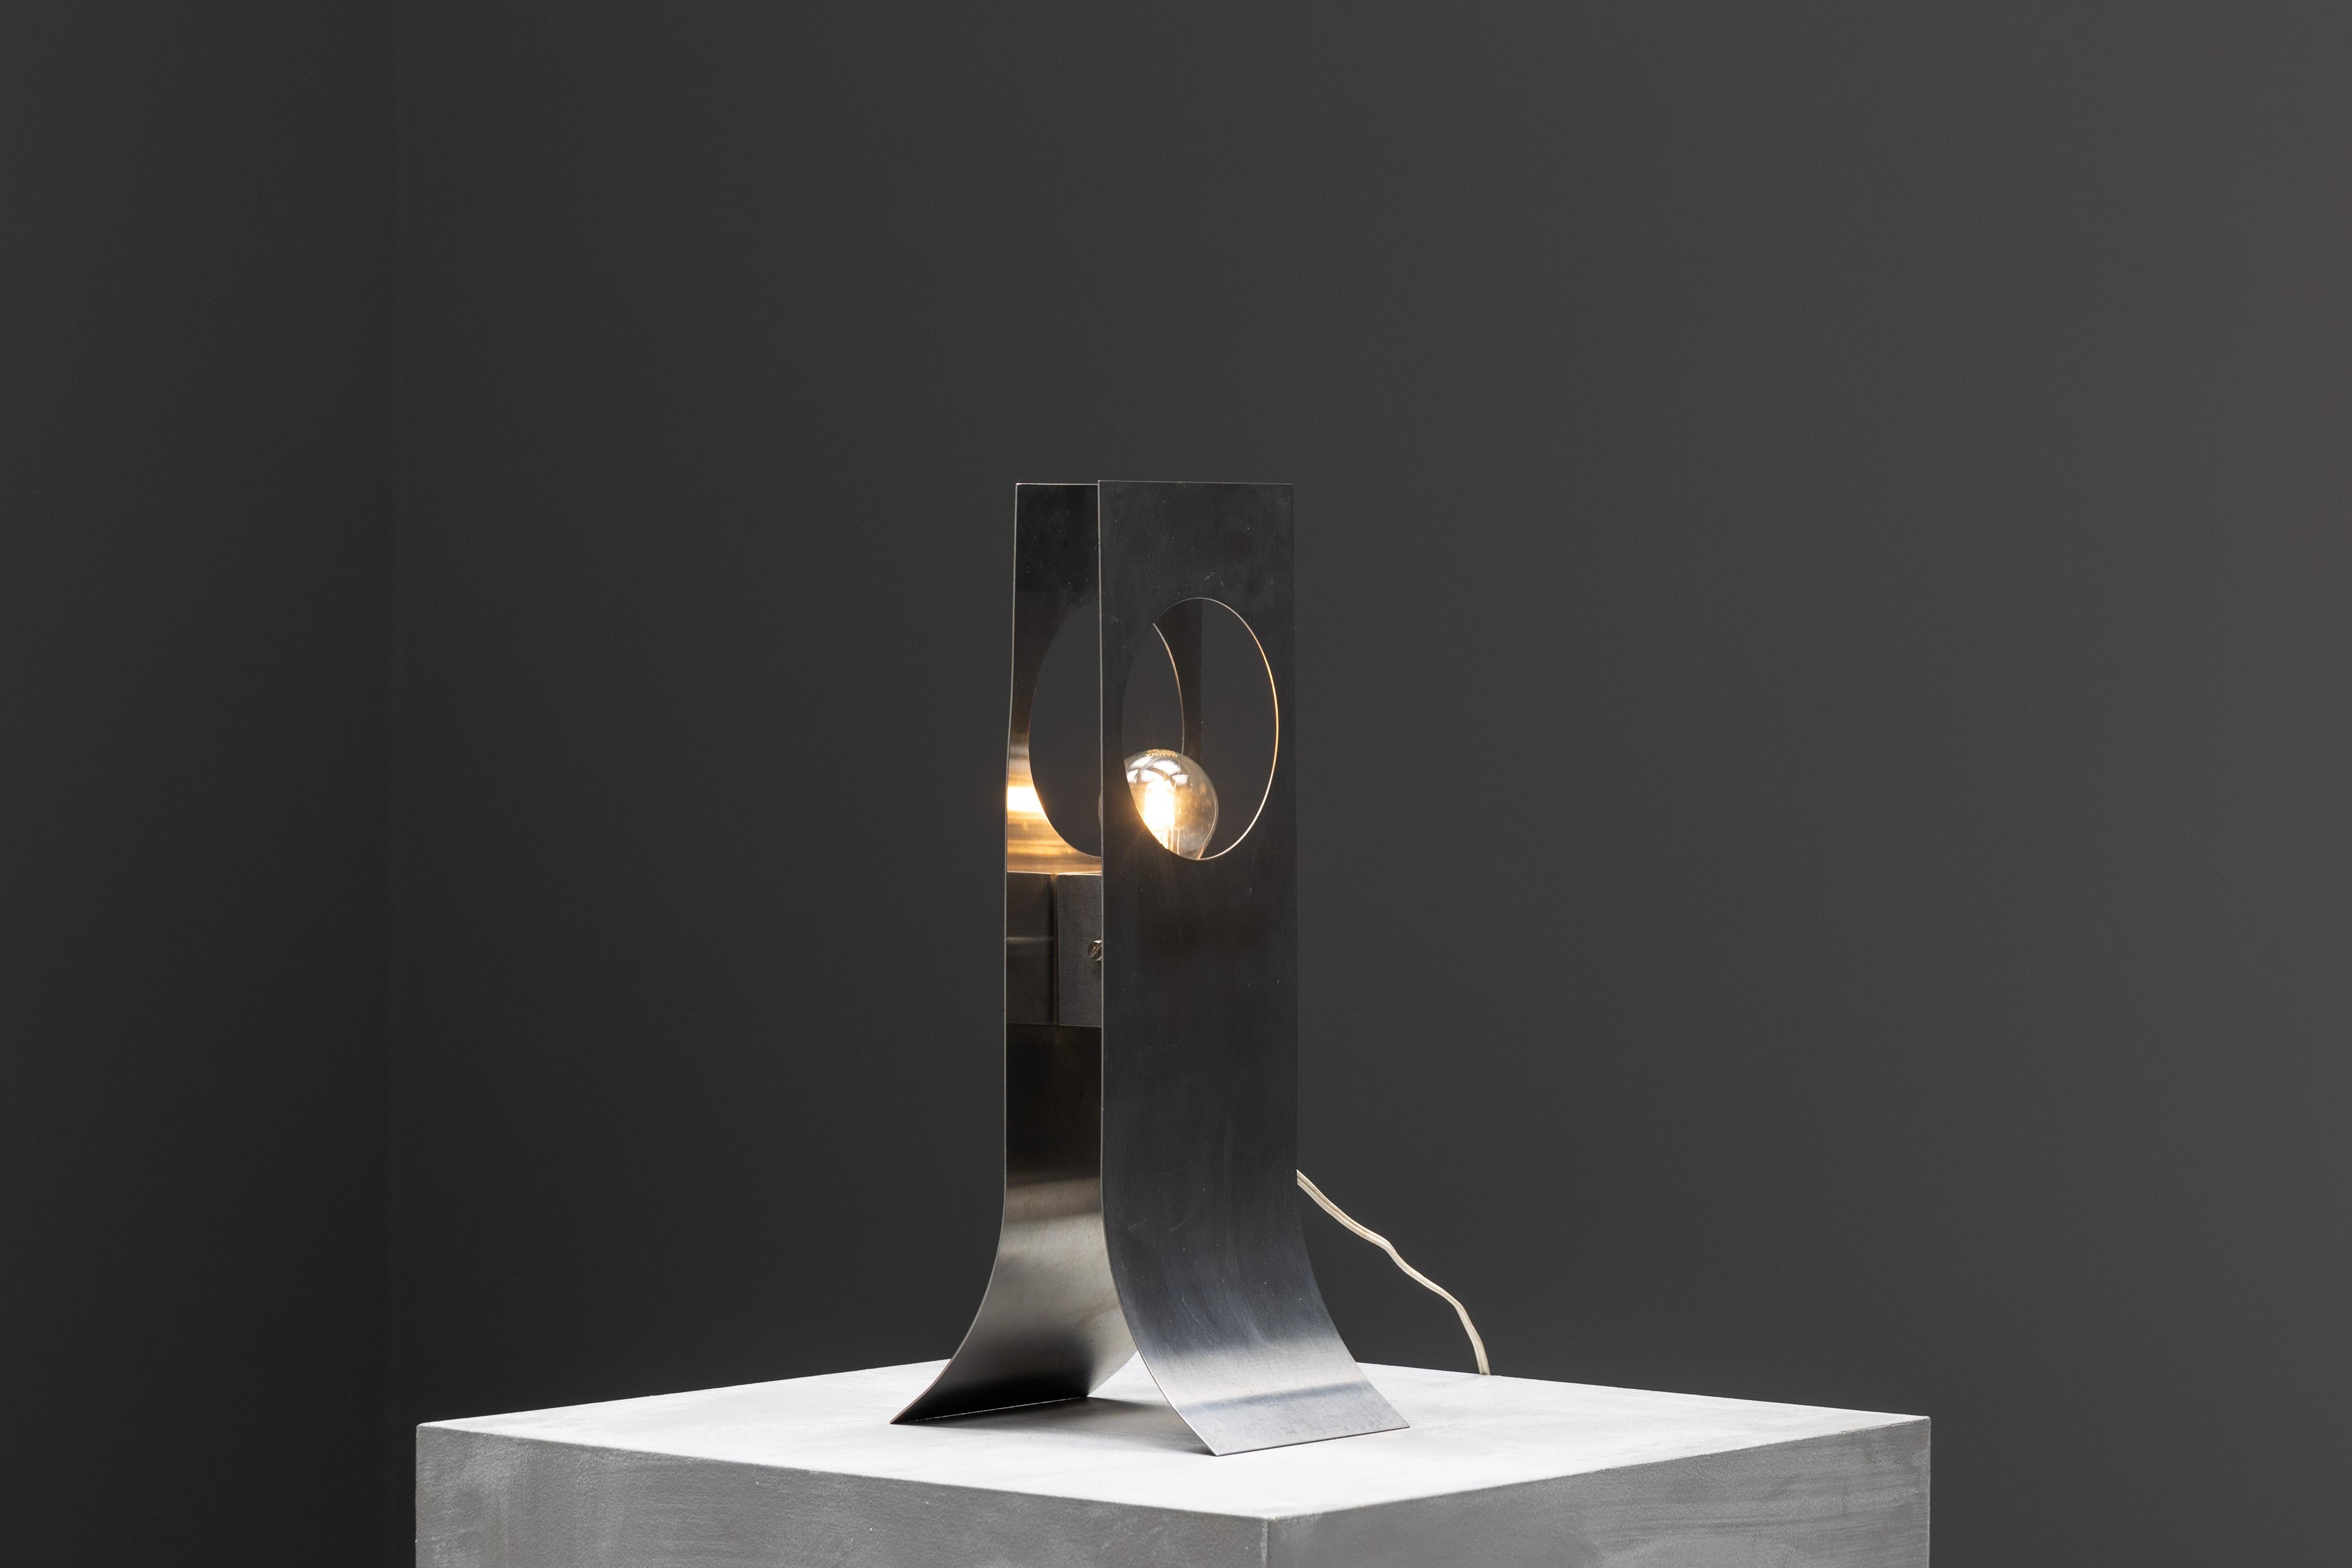 Lampe à poser en acier inoxydable de François Monnet, une pièce iconique présentée pour la première fois en 1969 et éditée par Kappa. Il incarne l'essence du design français de l'ère spatiale, caractérisé par sa finition chromée épurée et sa